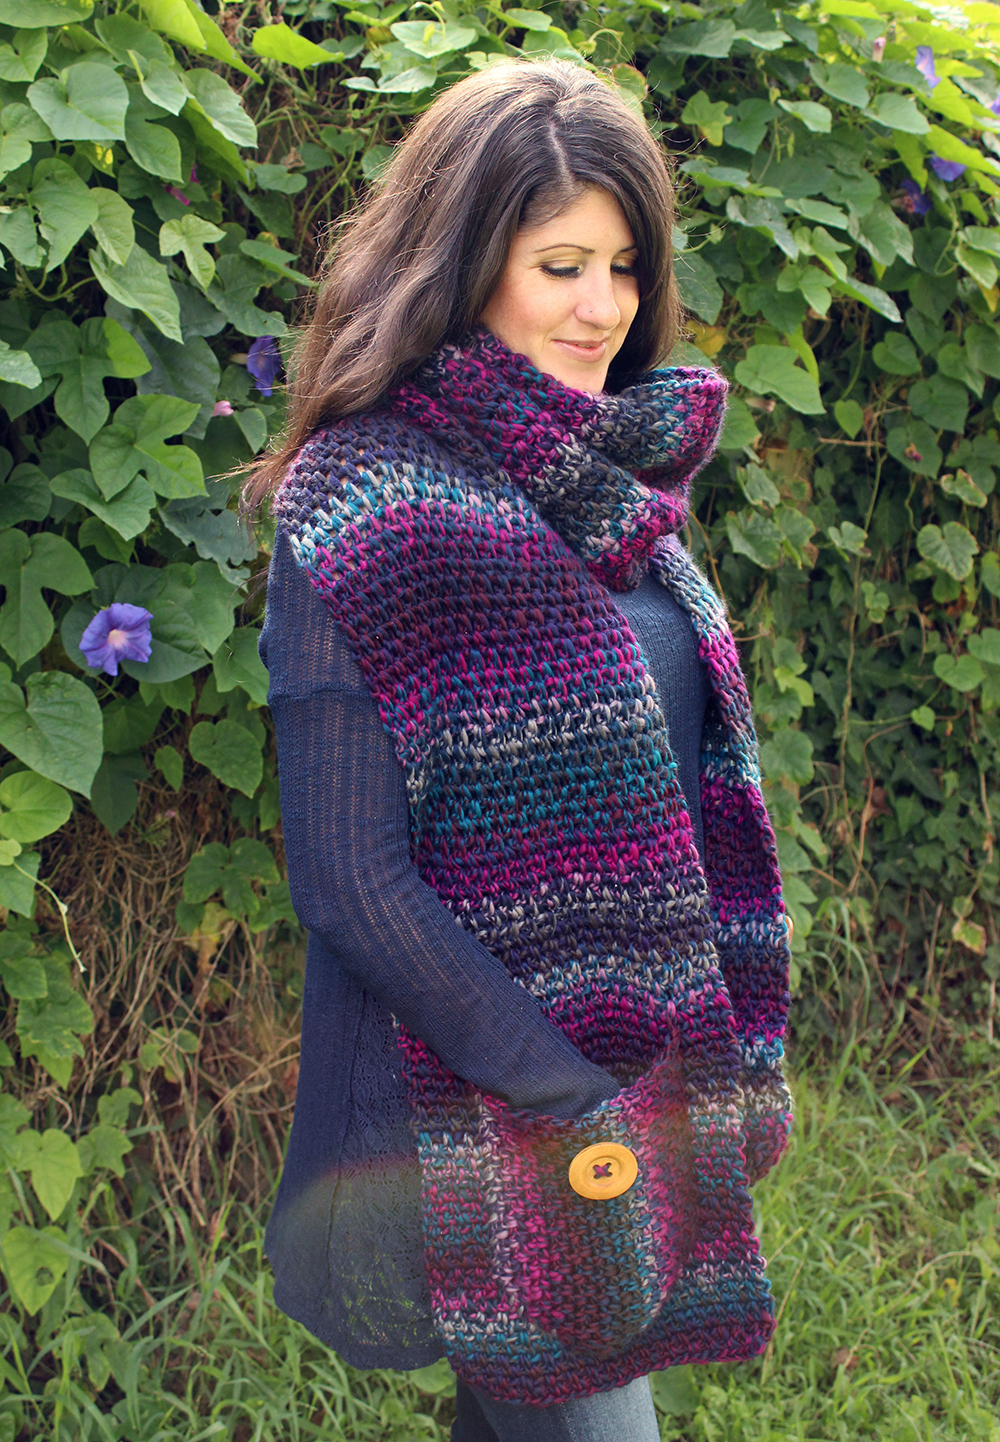 Loops & Threads 'Cozy Wool' Yarn Crochet Patterns - Easy Crochet Patterns